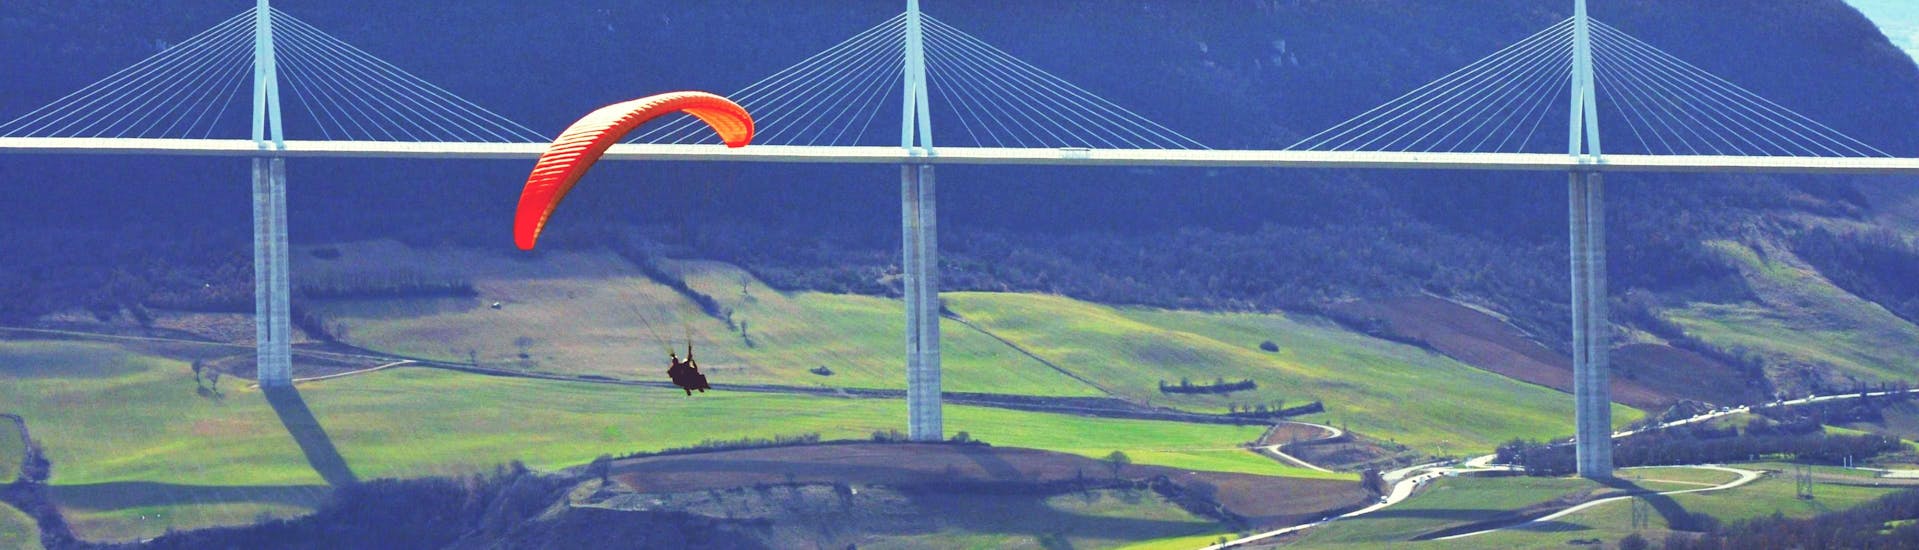 Un pilote de parapente d'Air Magic Parapente effectue un vol en tandem en parapente "XXL" devant le viaduc de Millau.